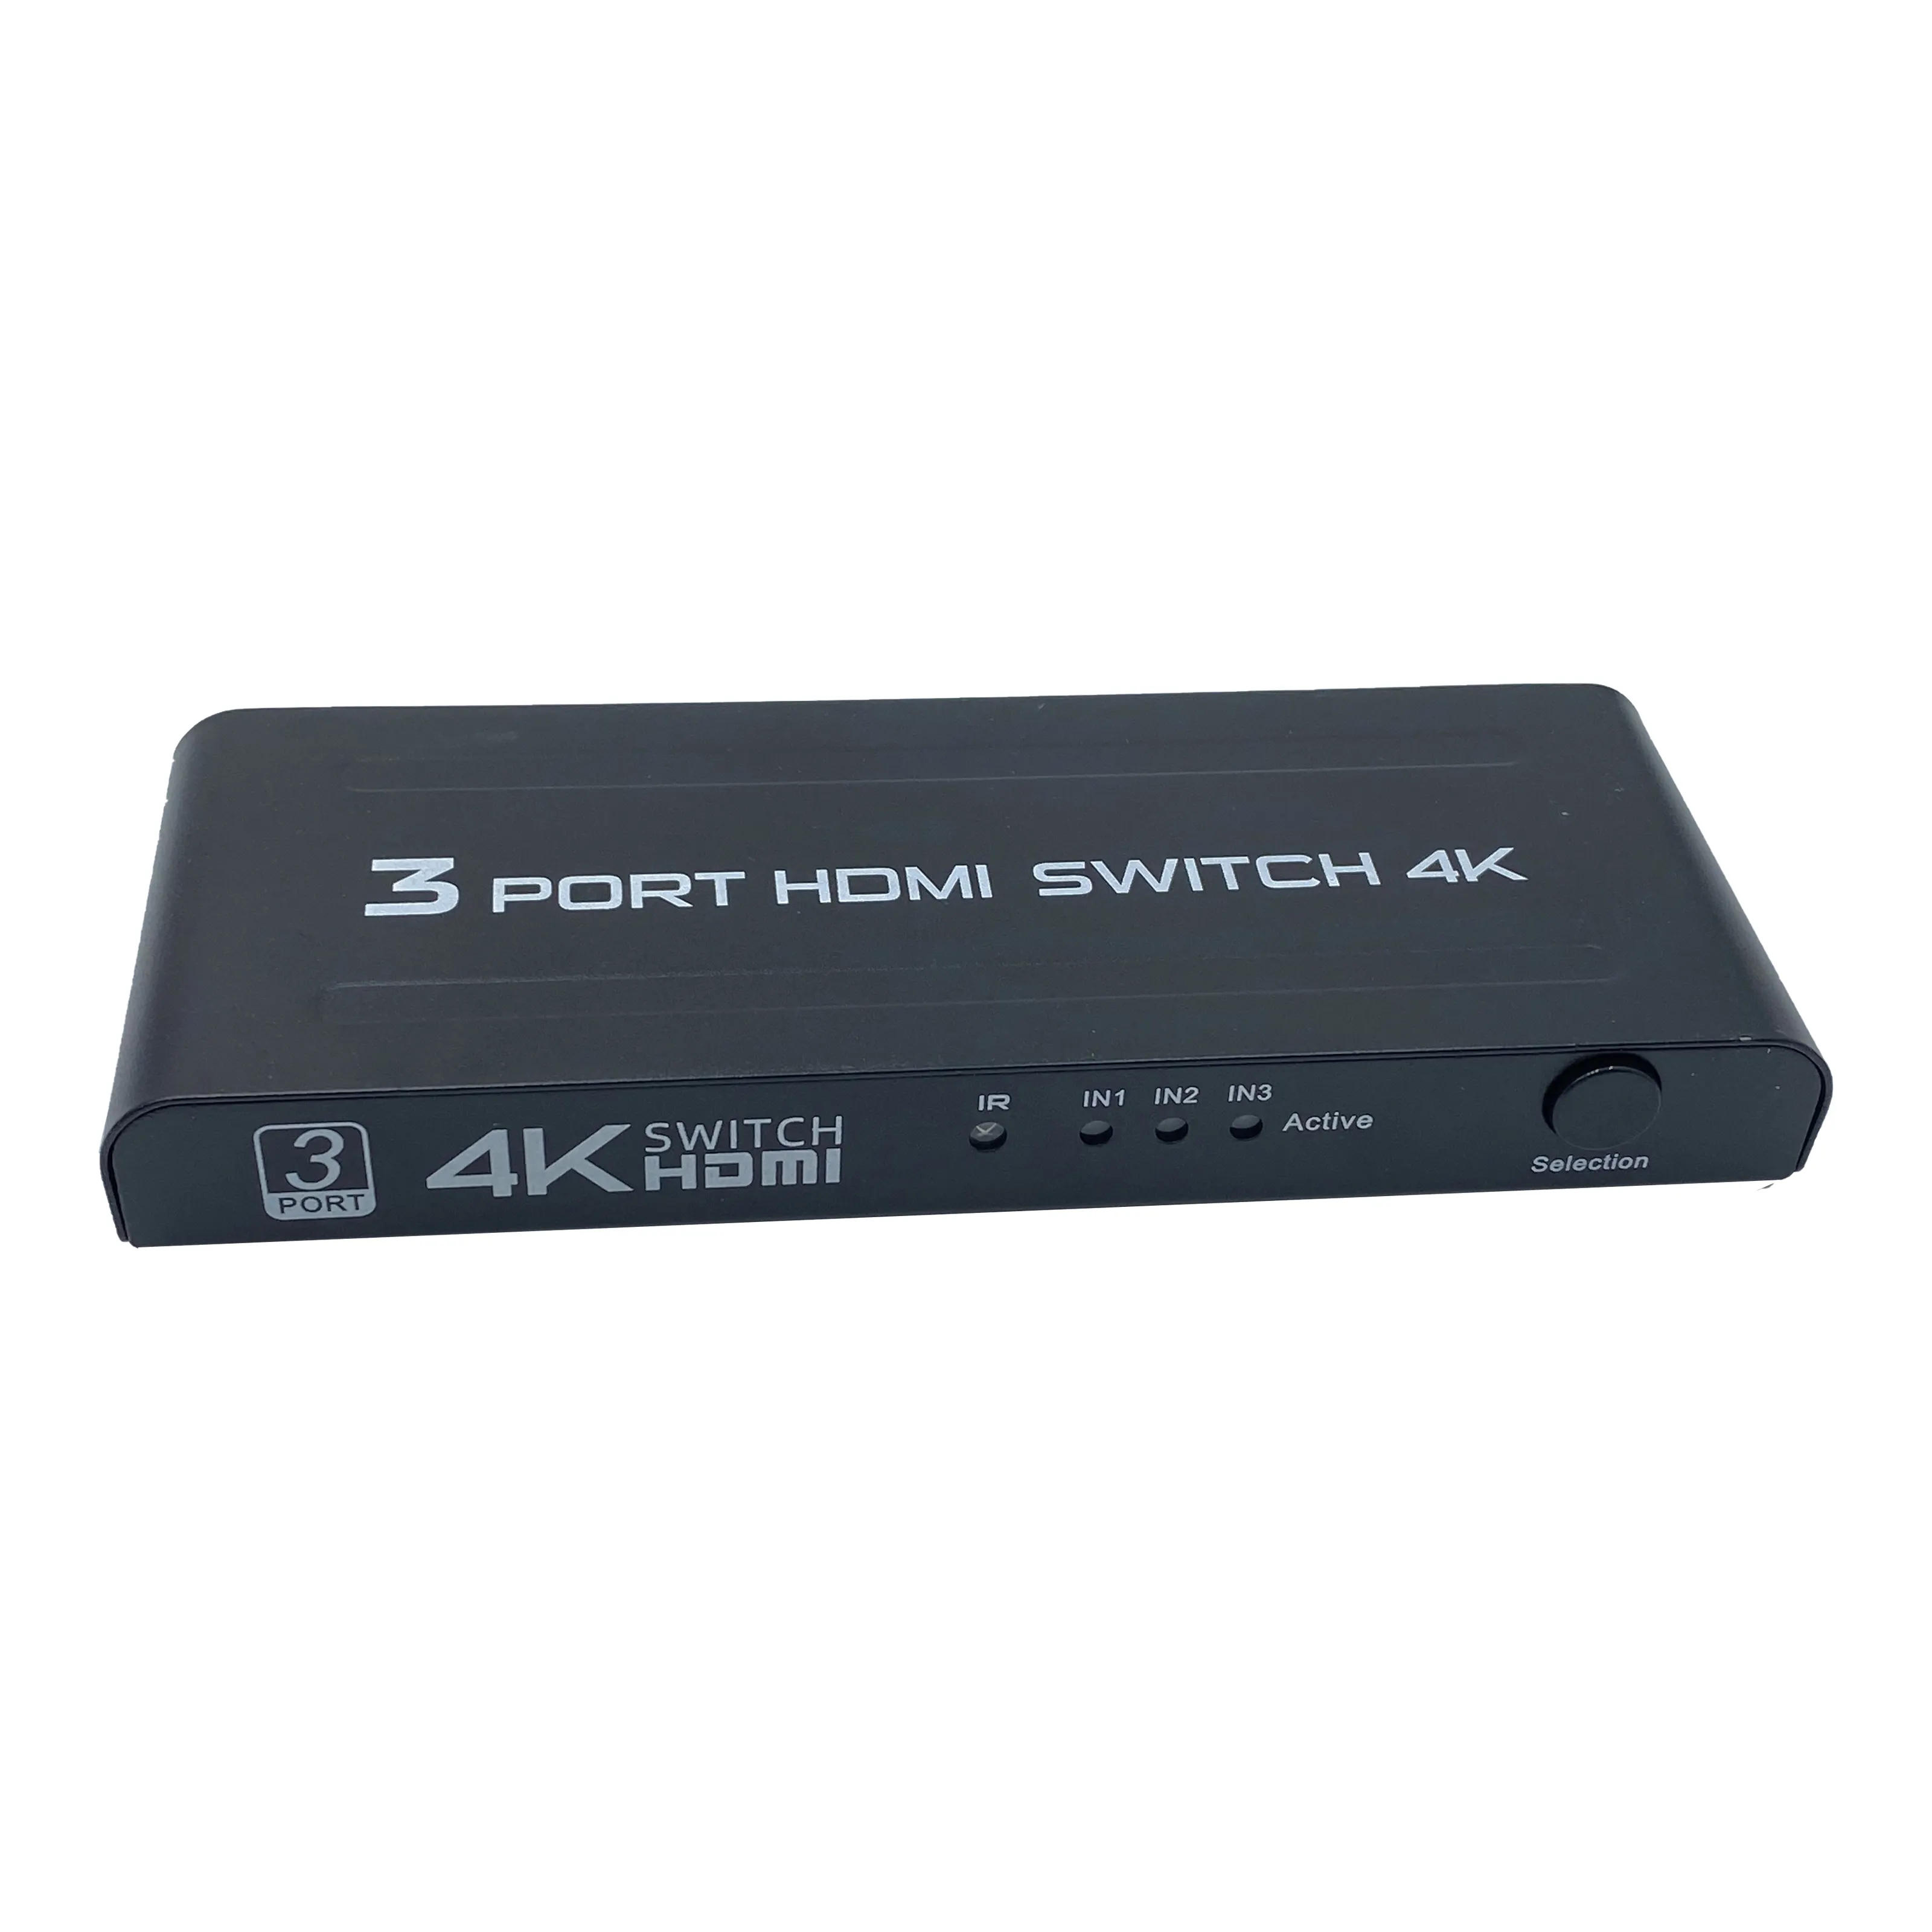 Switch-Box SY S-SW-4K-301 3 × 1 Port 4 K HDMI 1.4 Schwarzer PVC-Karton Aoc-Monitor auf Lager 3-in-1 OUT 4 K HDMI-SCHALTER Nickelplattiert